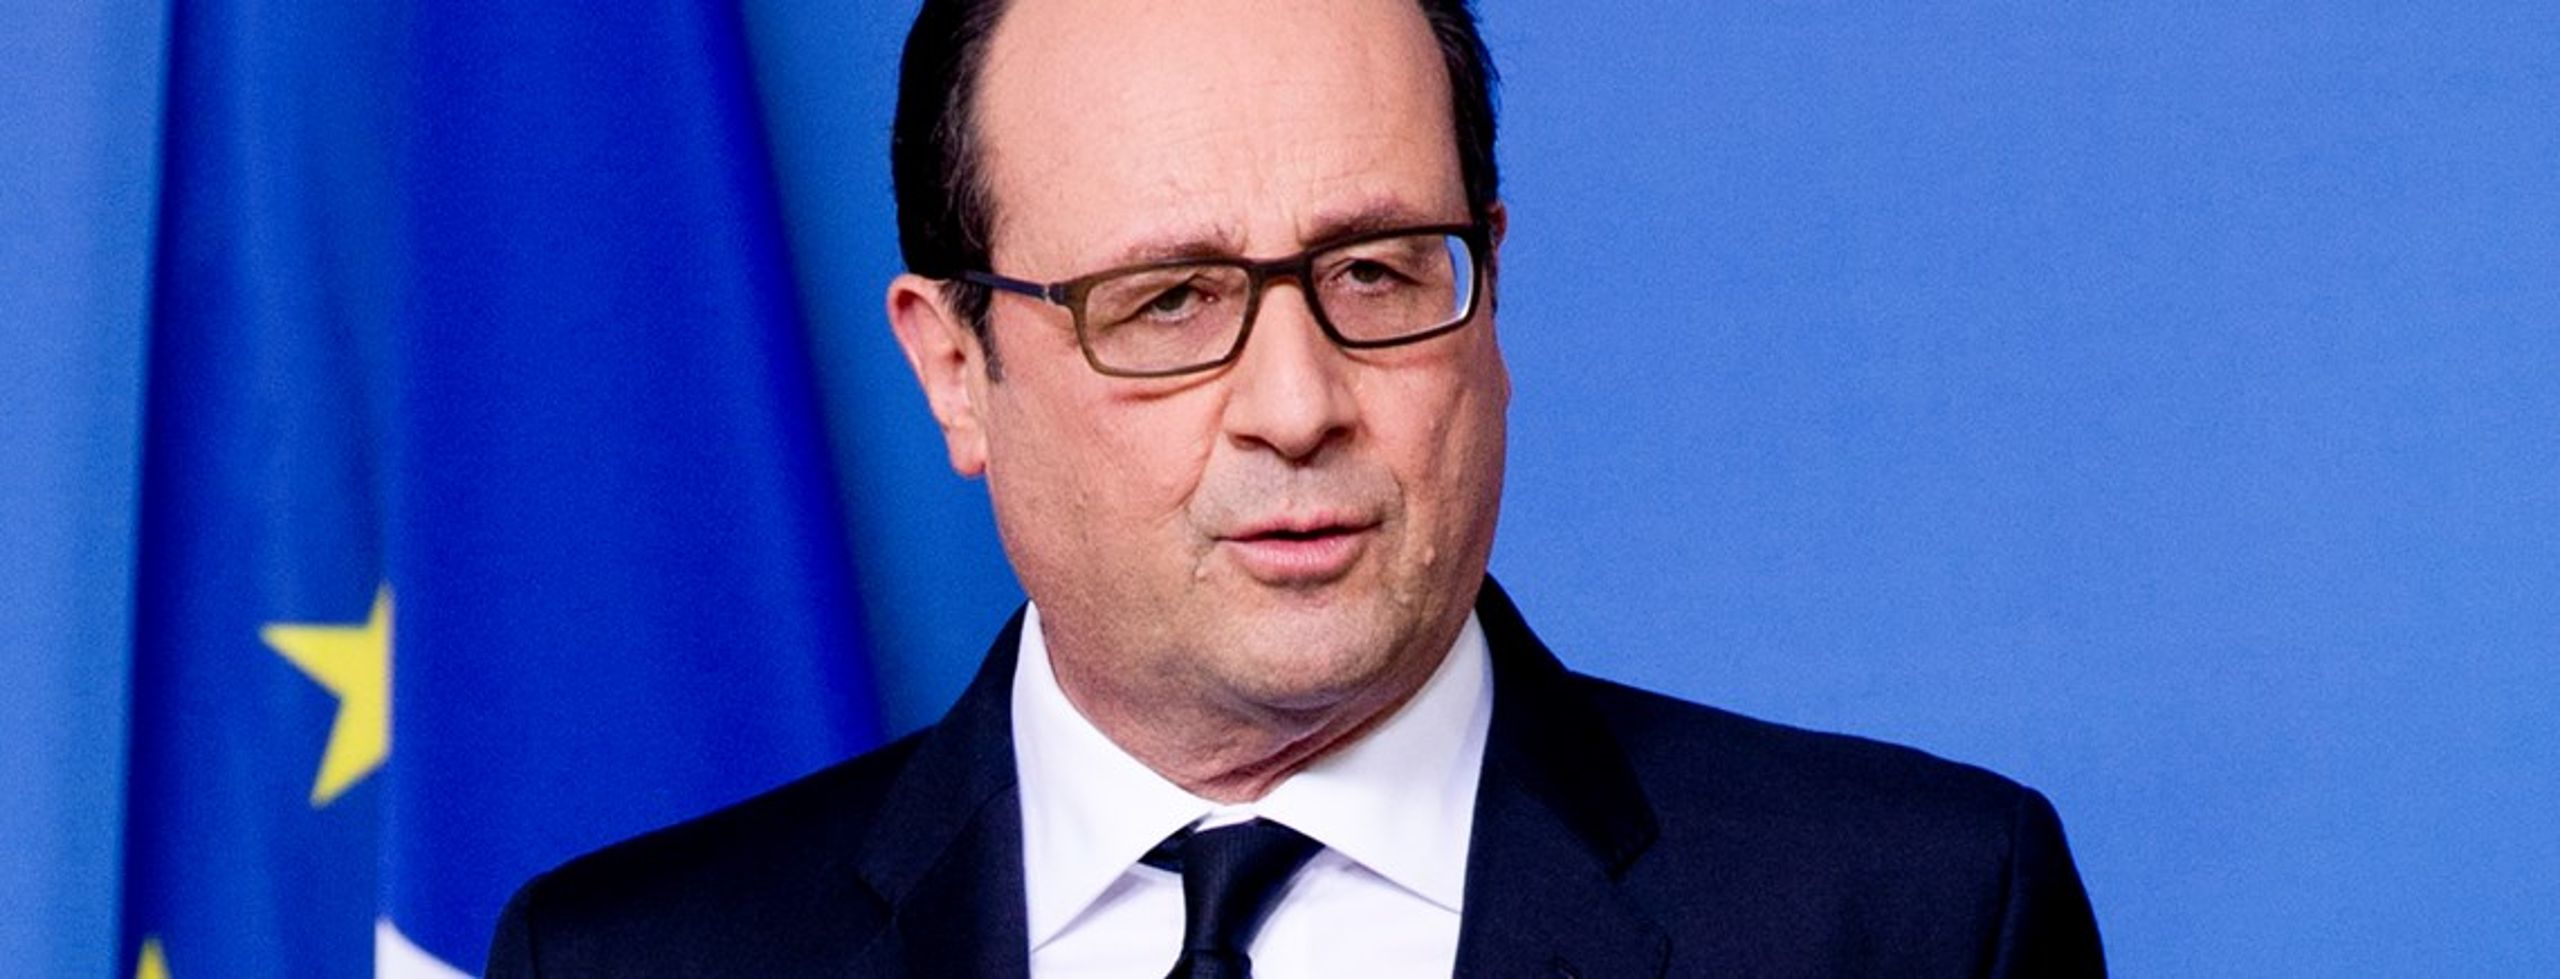 Den franske præsident Hollande opfordrer sine medborgere til at stå sammen oven på terrorattentat.